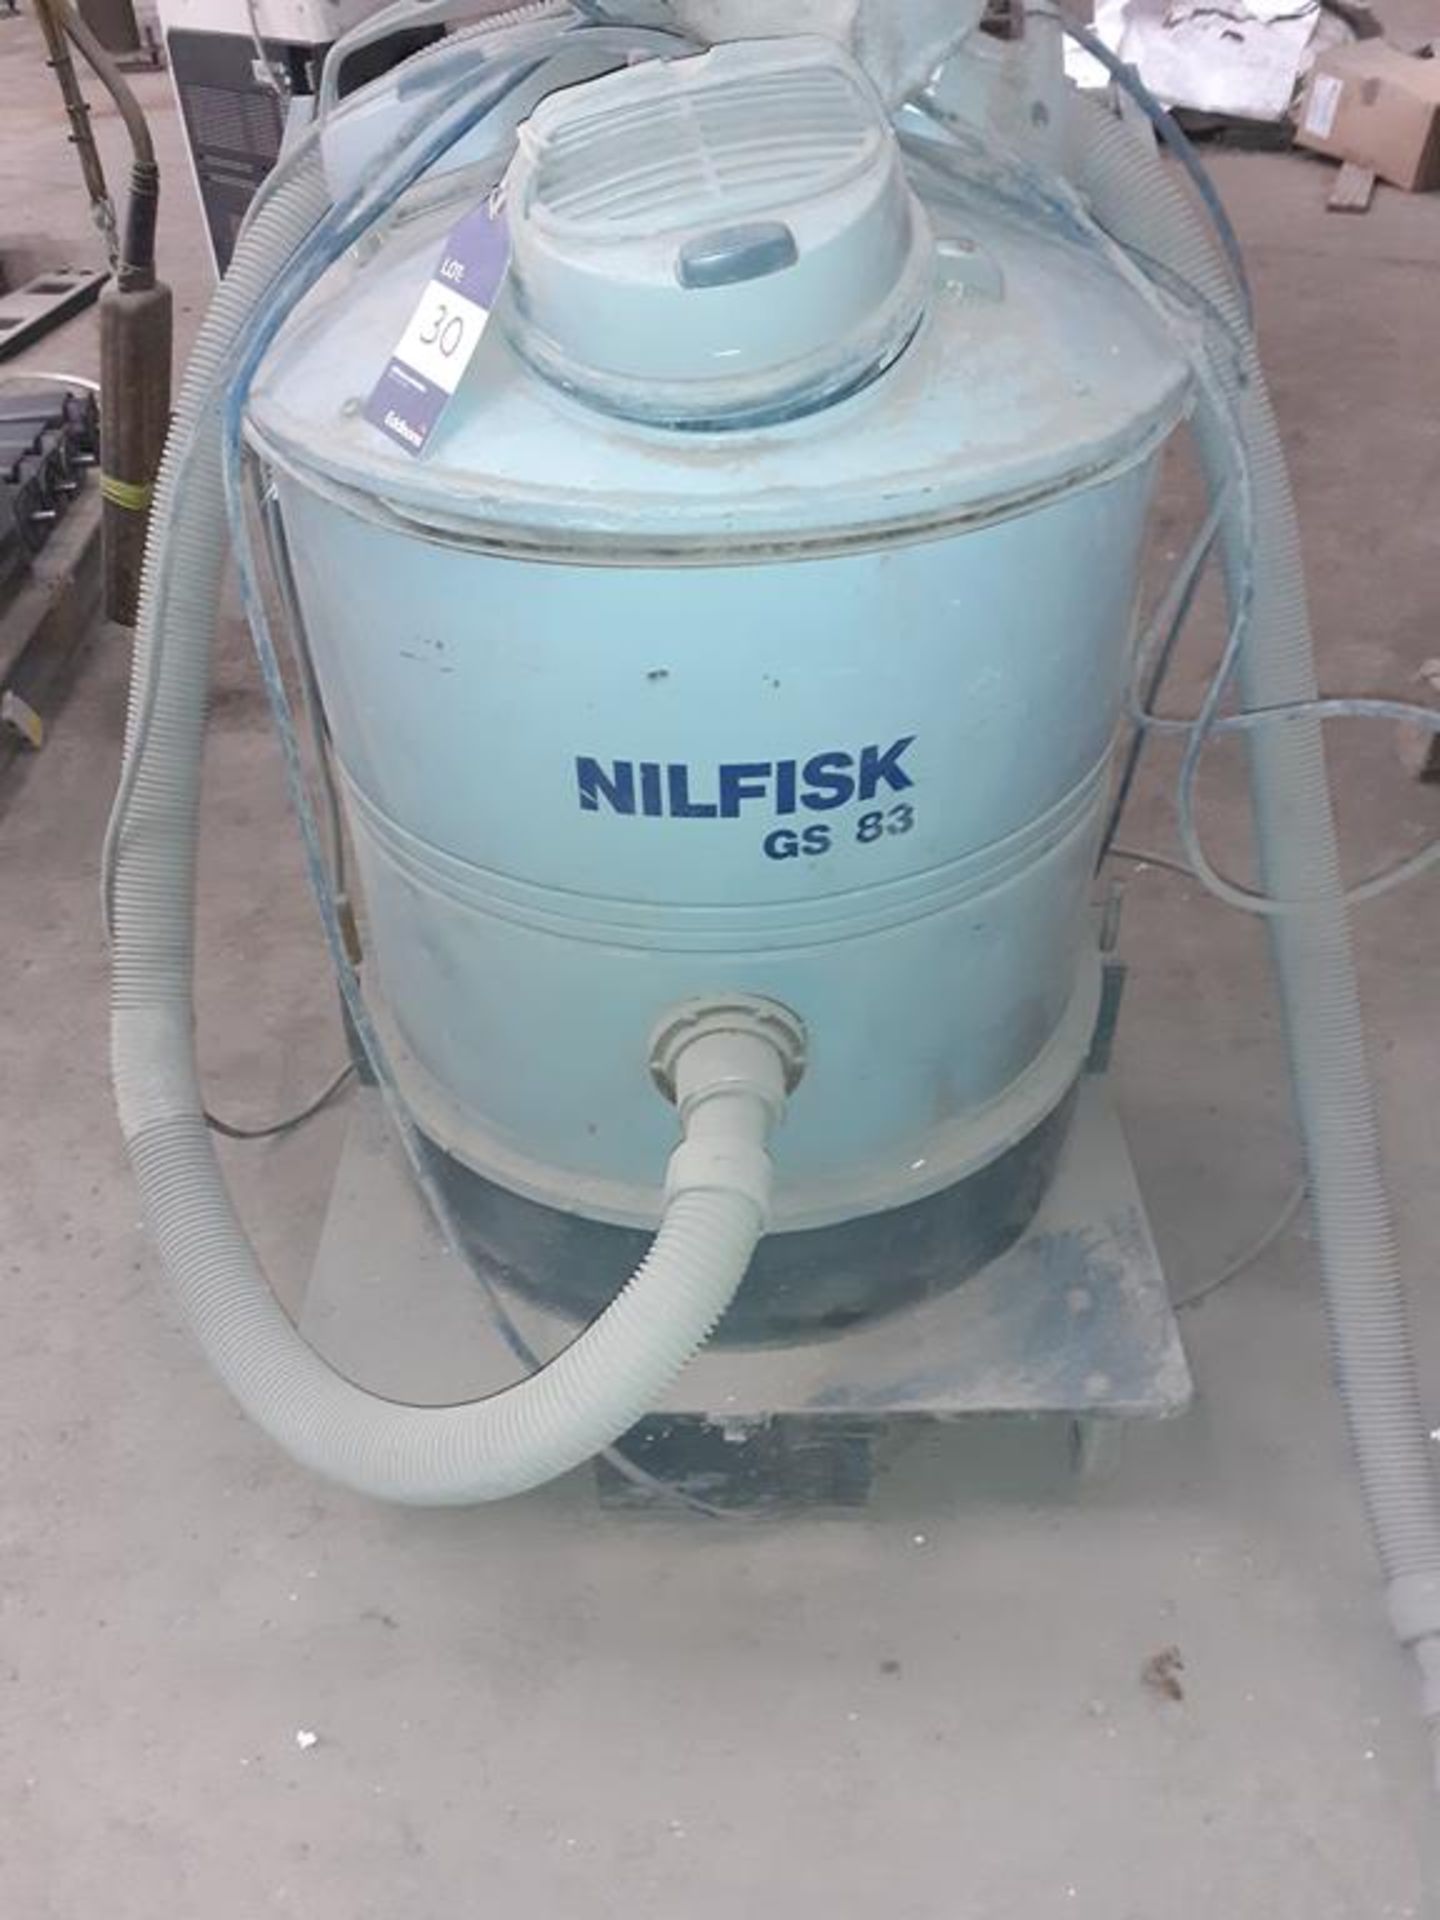 Nilfisk GS83 industrial vacuum cleaner - Image 3 of 4